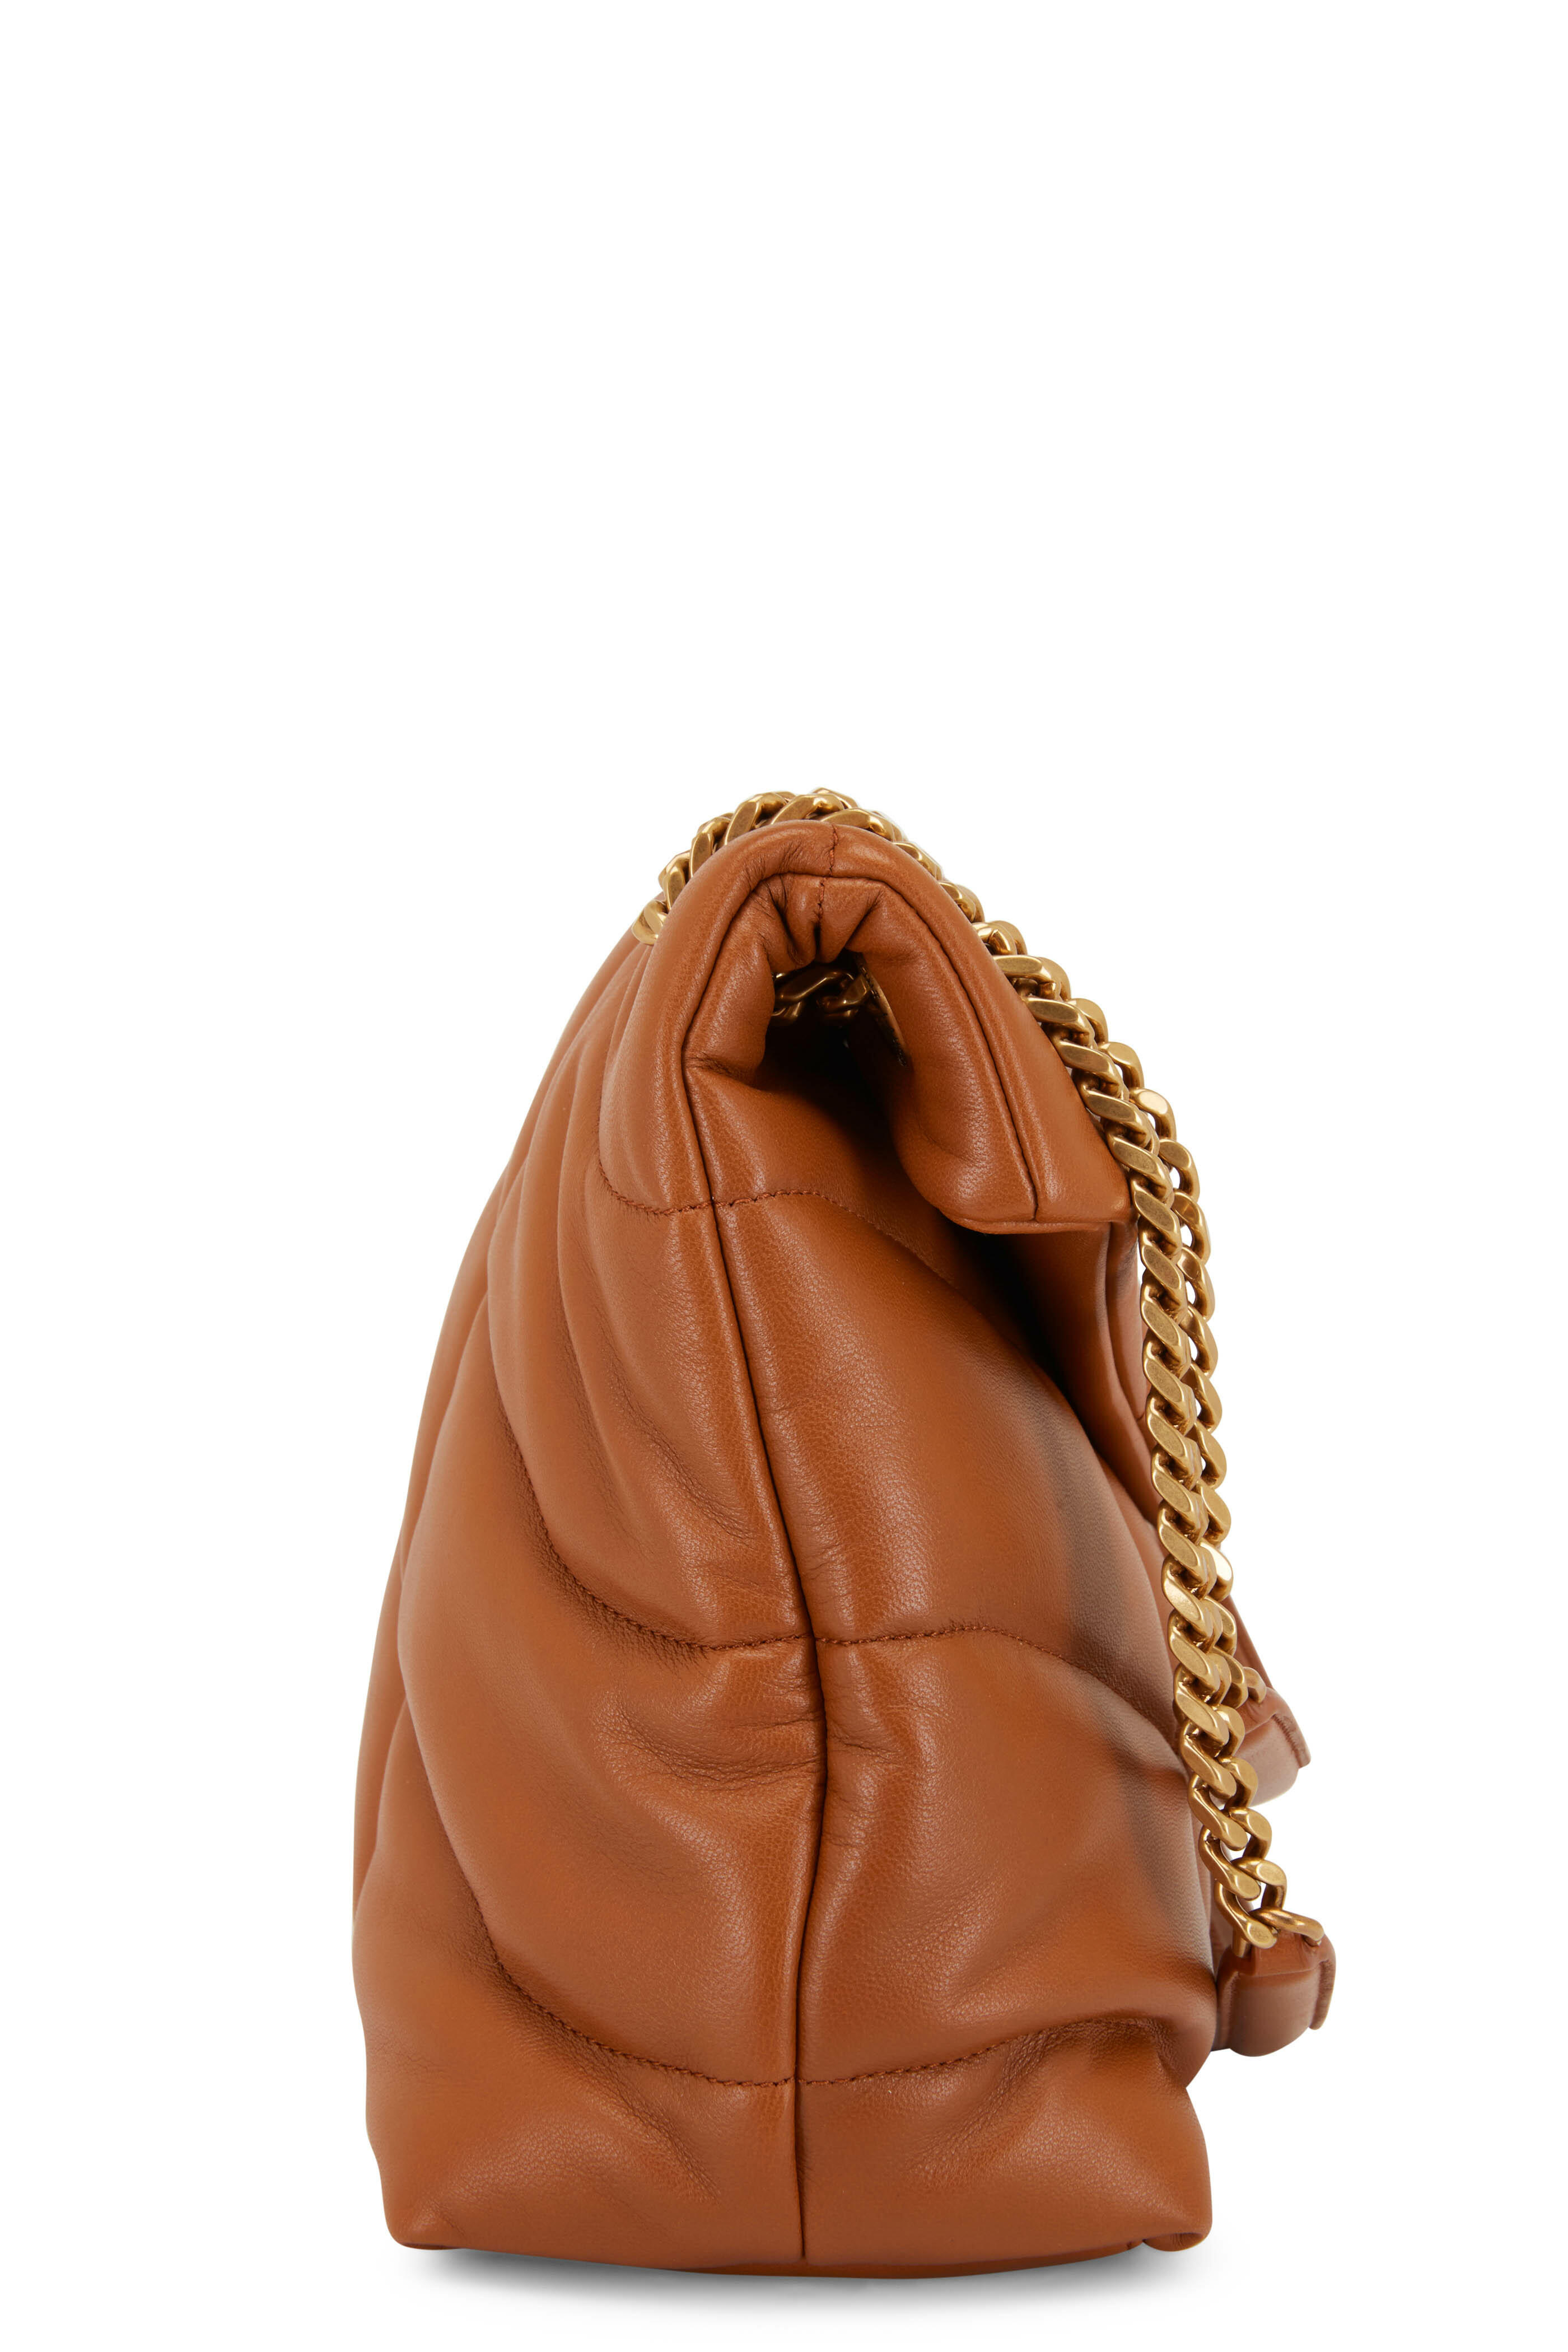 Saint+Laurent+Loulou+Shoulder+Bag+Small+Dark+Beige+Leather for sale online